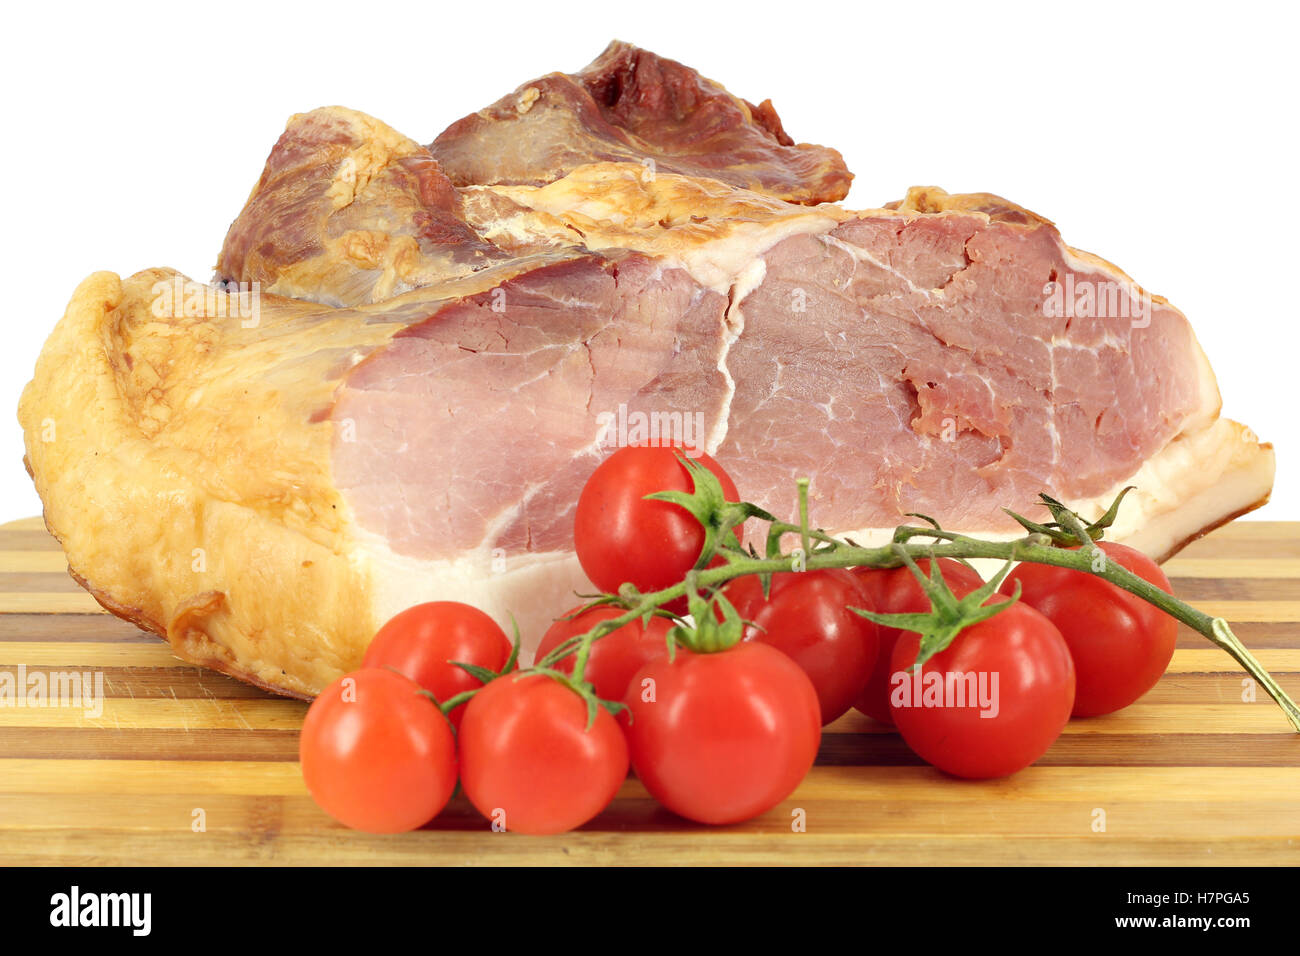 smoked ham and tomatoes on white Stock Photo